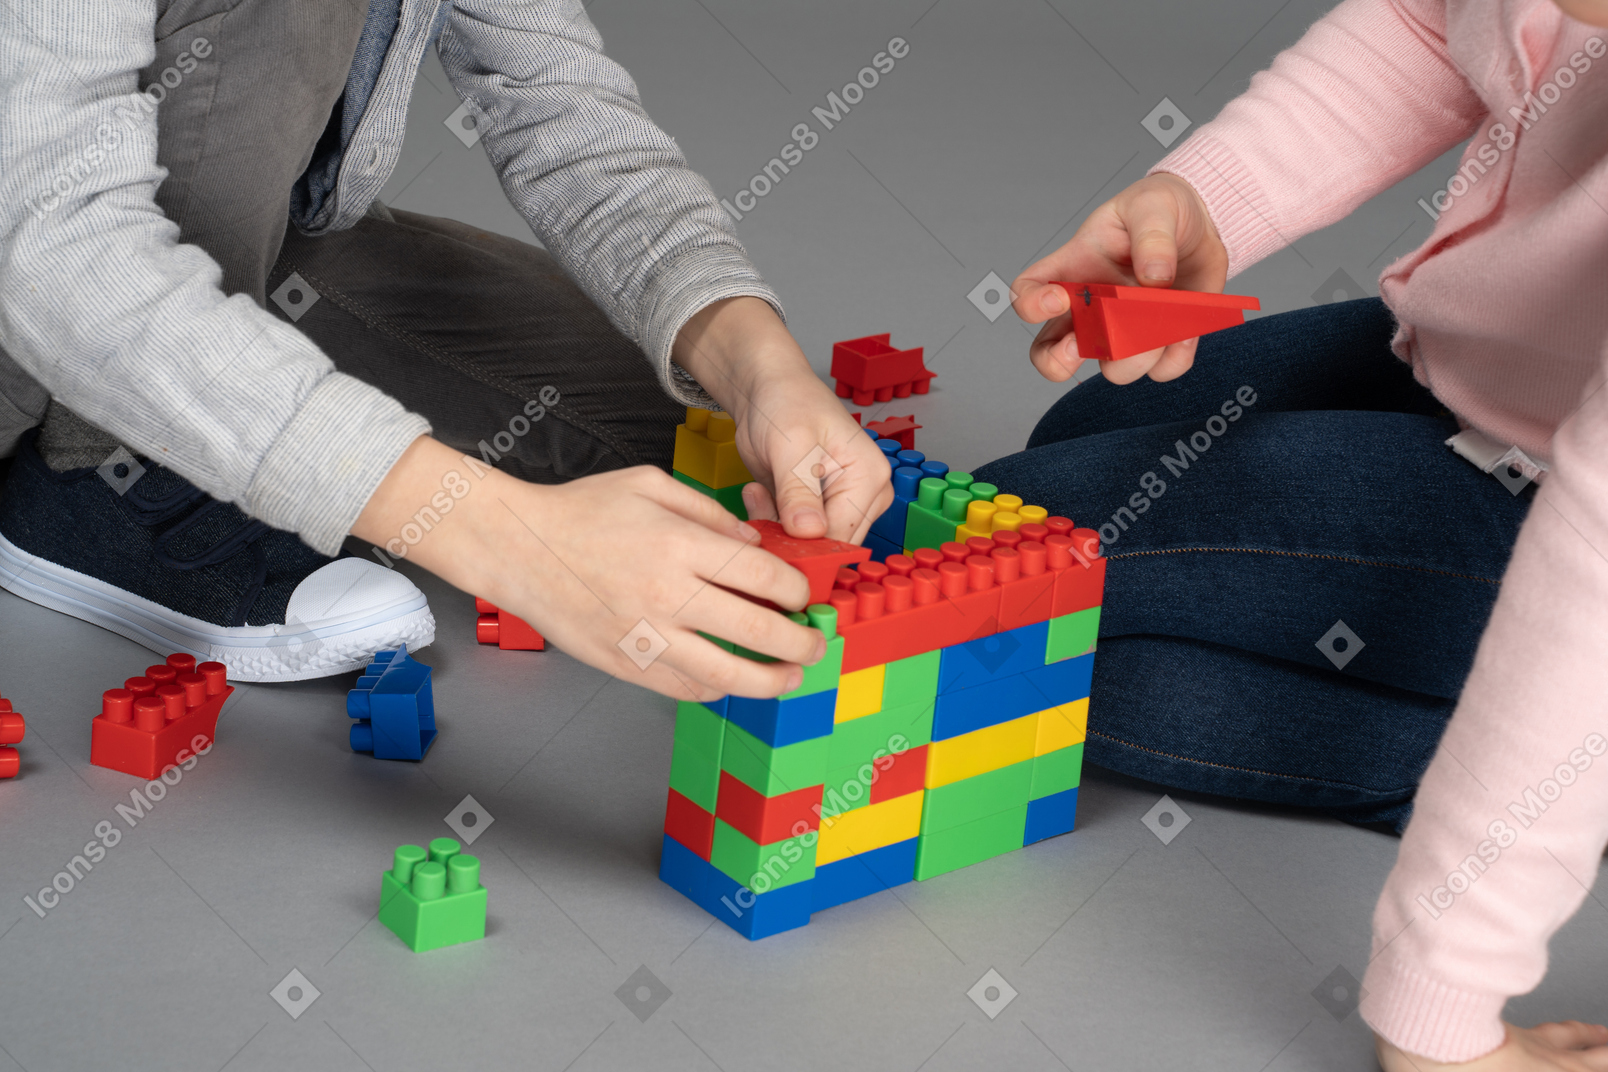 Crianças brincando de lego